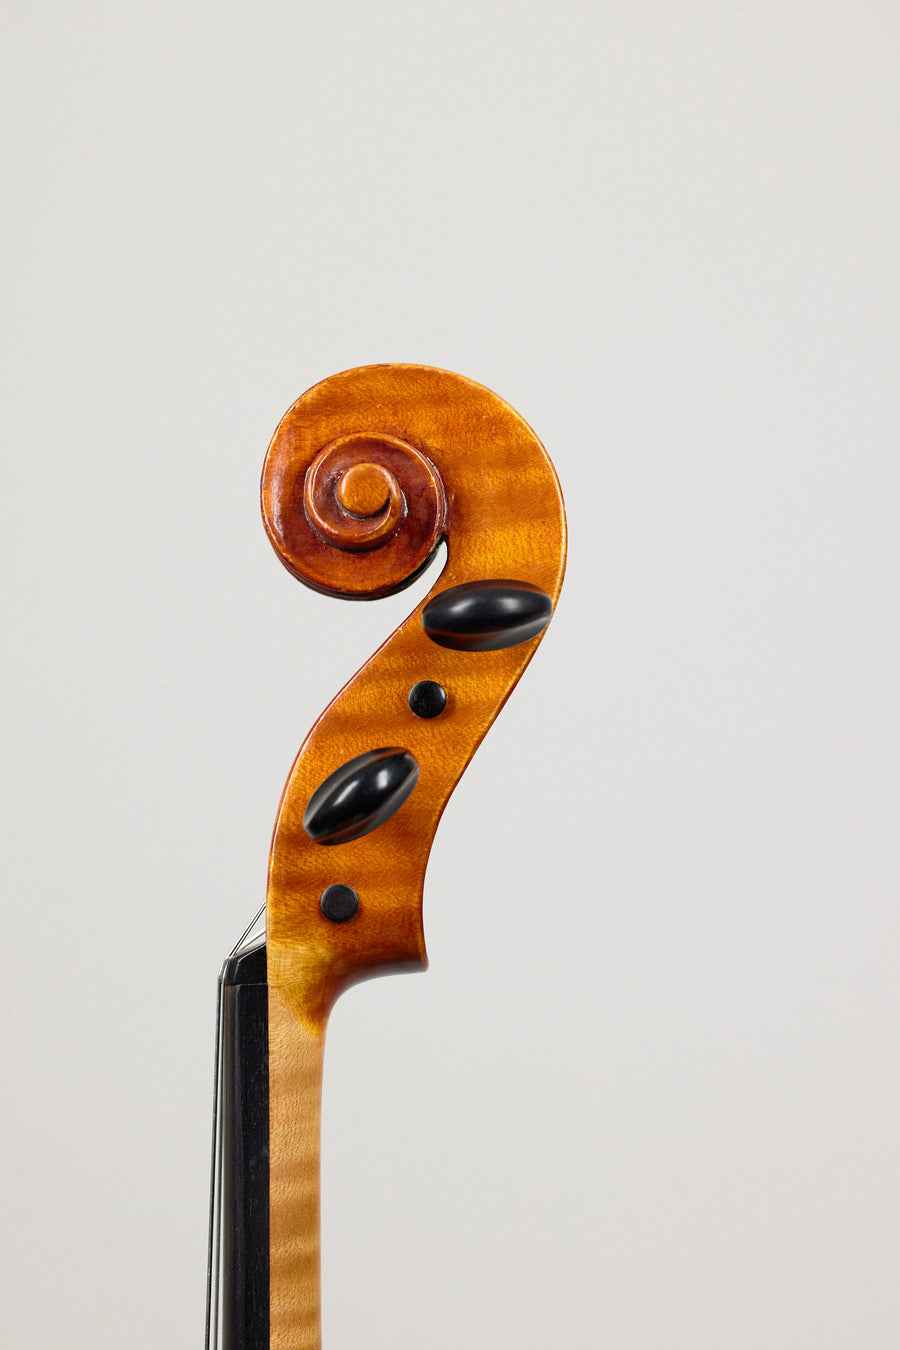 A Modern Viola From 1992 By Geoffrey Ovington. 16 5/8”